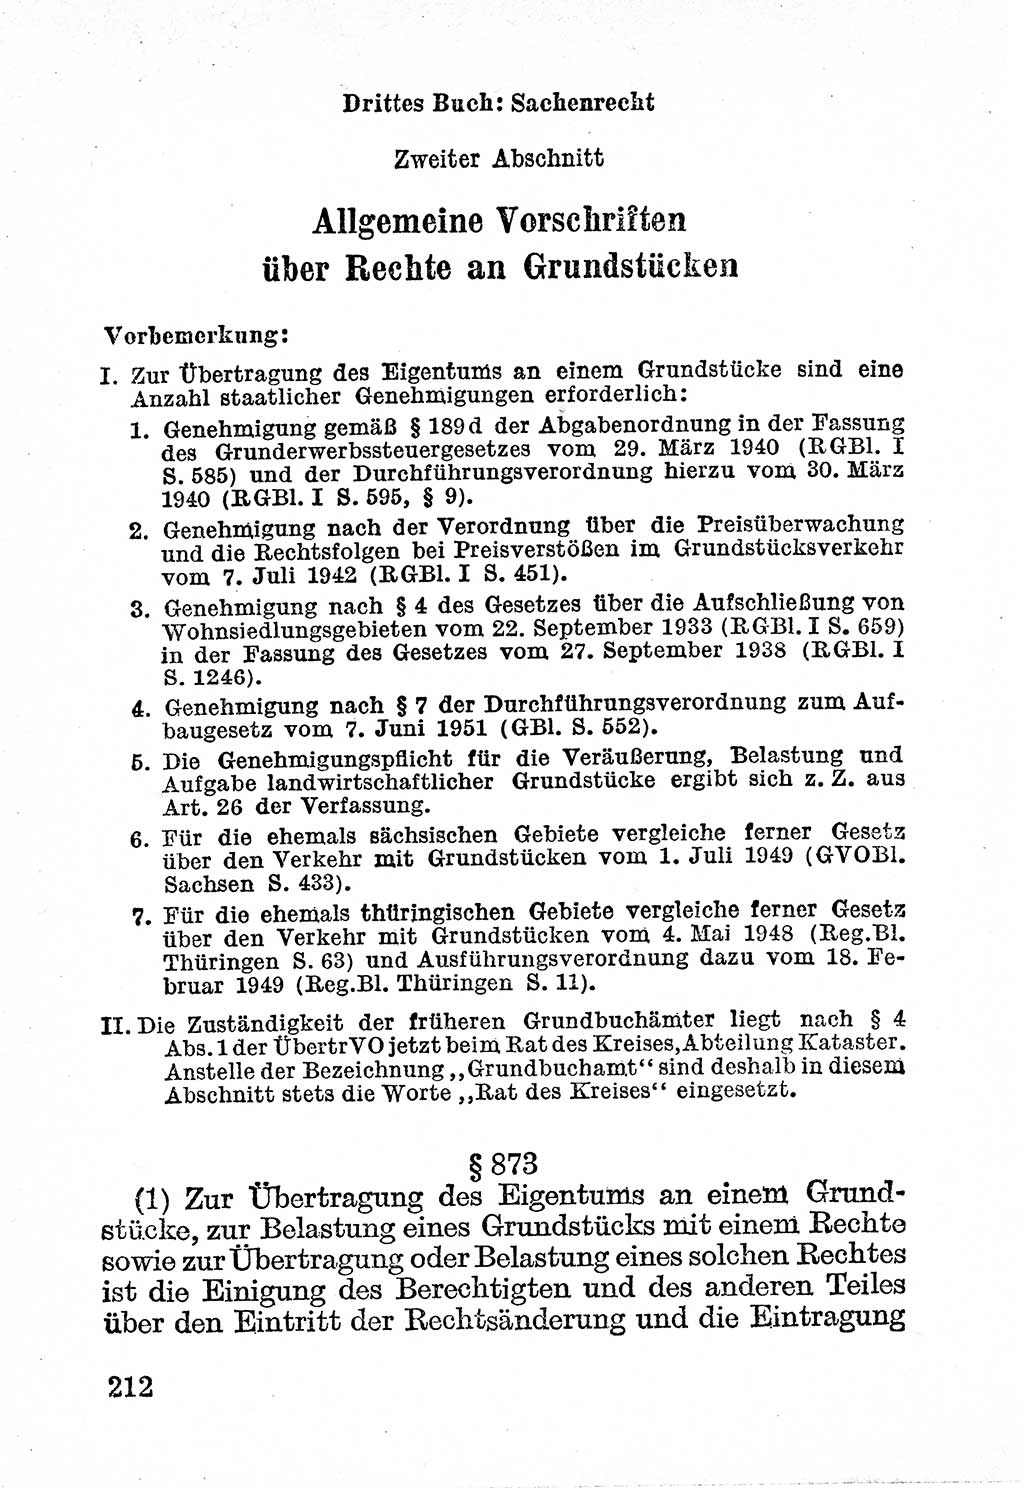 Bürgerliches Gesetzbuch (BGB) nebst wichtigen Nebengesetzen [Deutsche Demokratische Republik (DDR)] 1956, Seite 212 (BGB Nebenges. DDR 1956, S. 212)